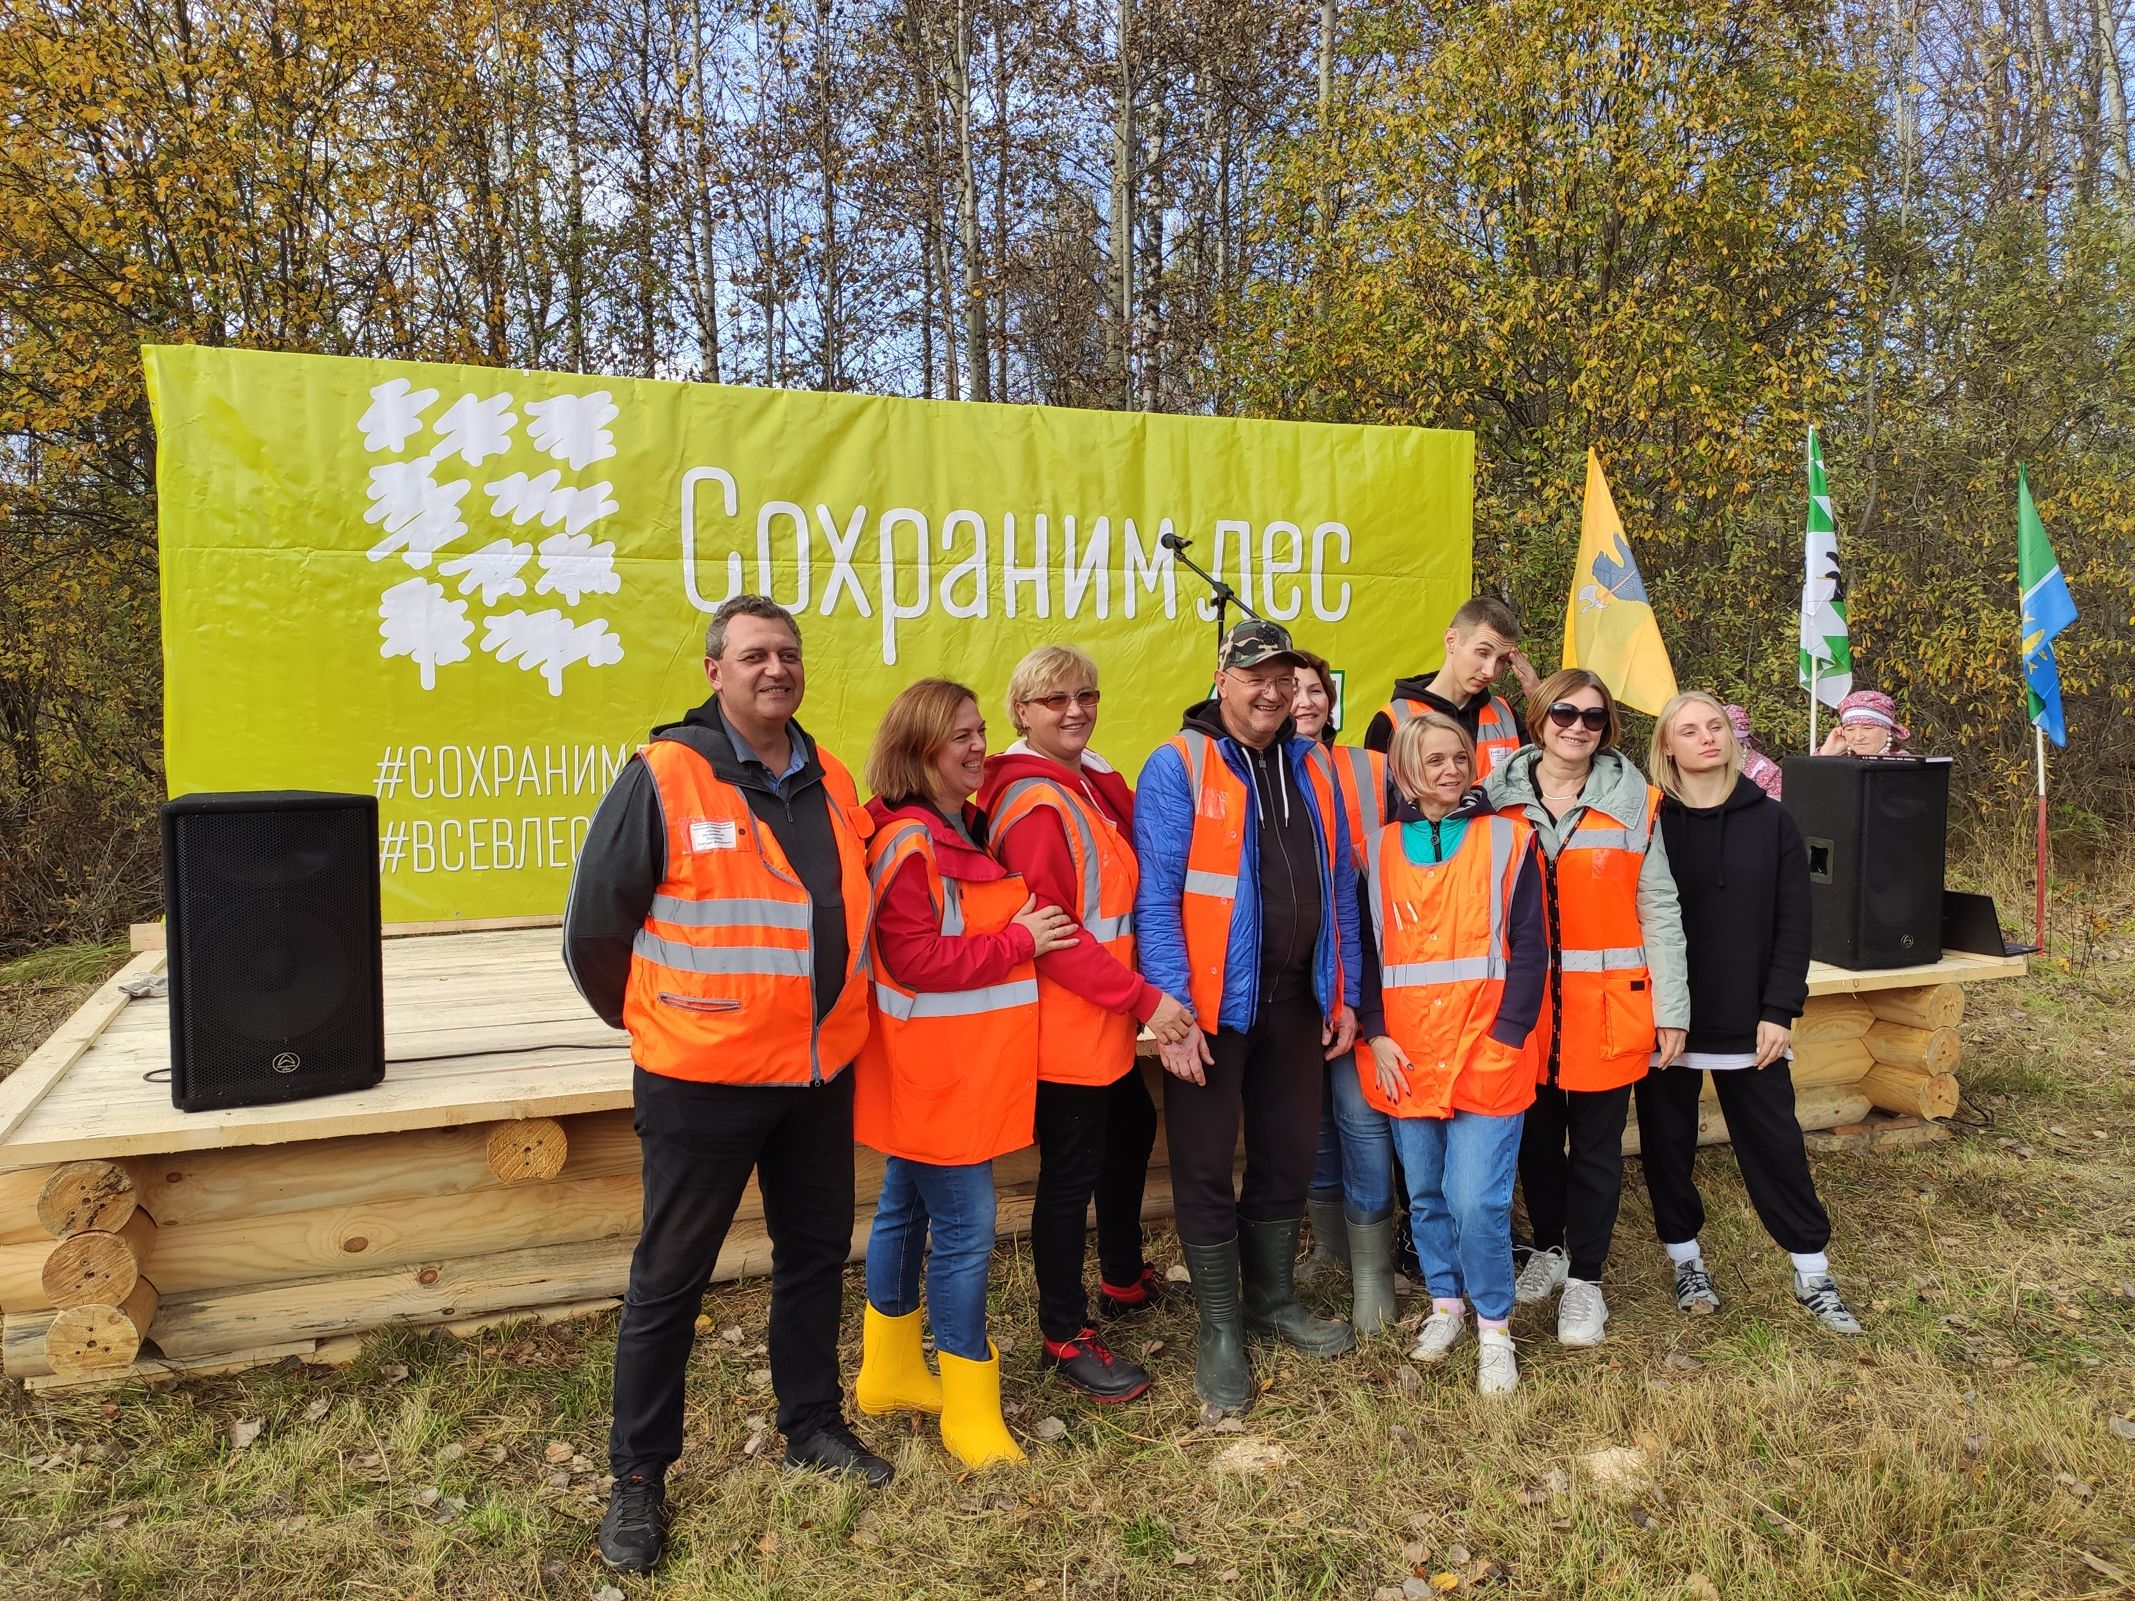 Около 3 тысяч елей посадили участники акции «Сохраним лес» в Ярославской области